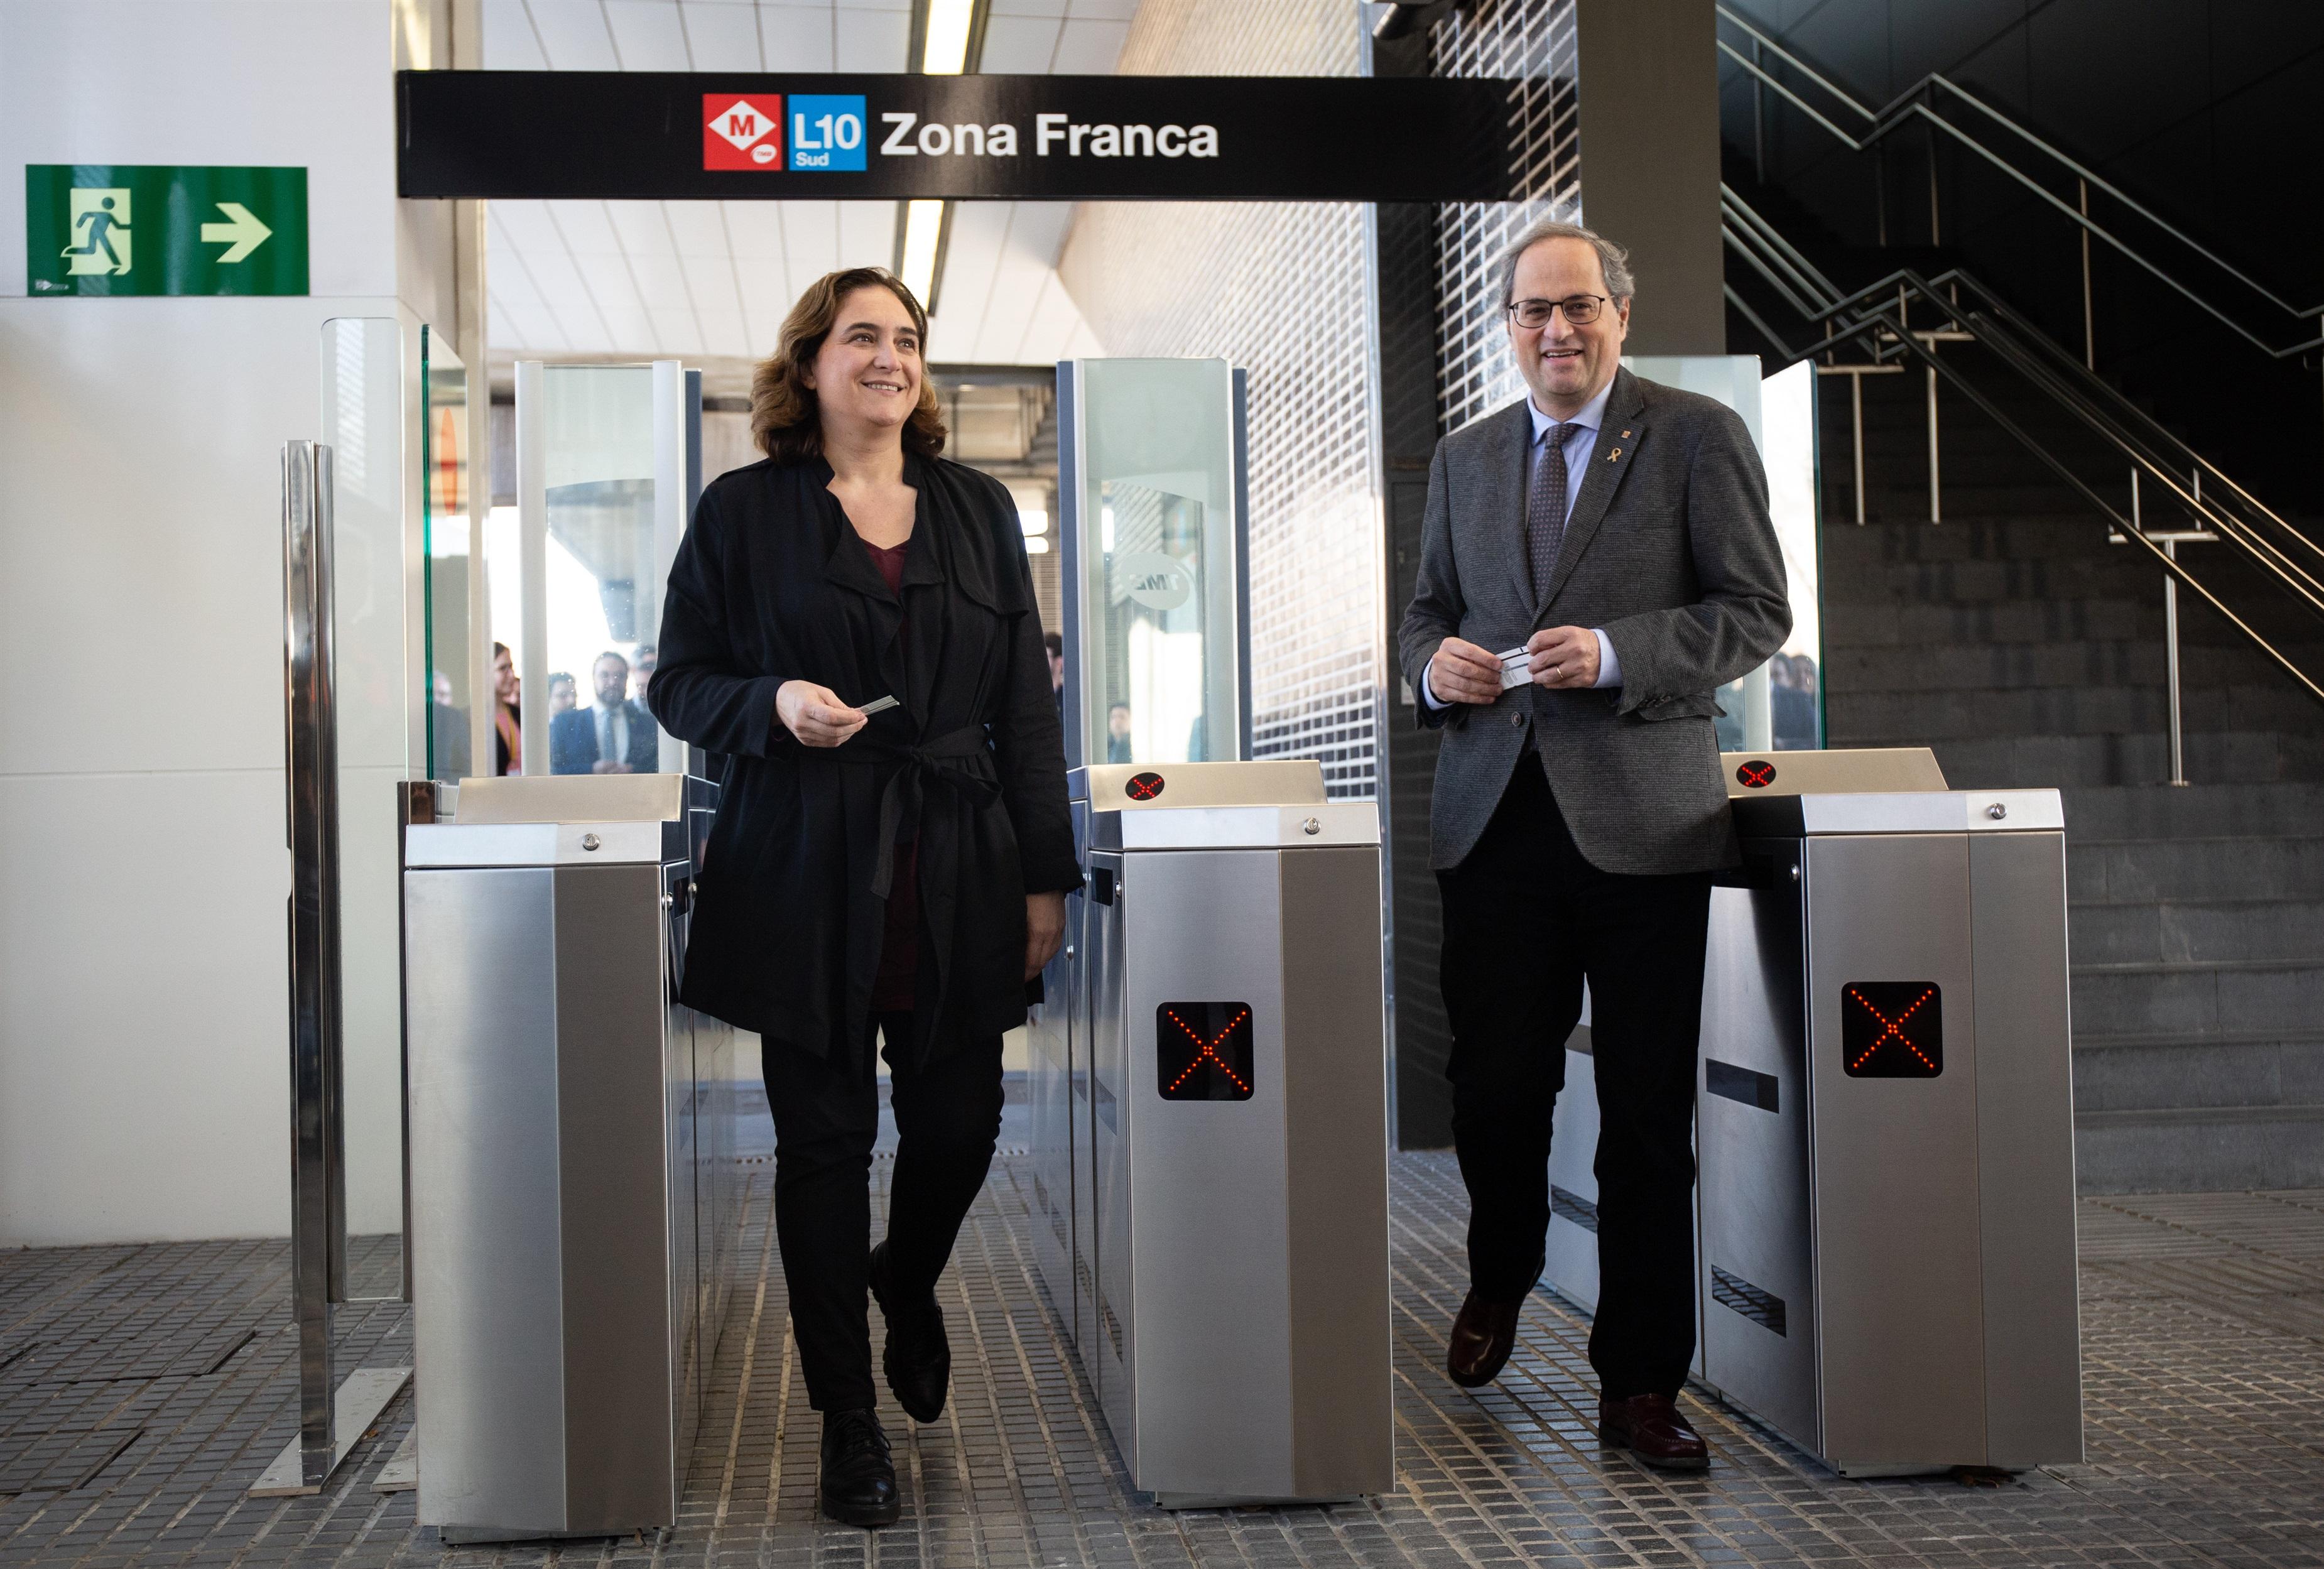 La alcaldesa de Barcelona Ada Colau y el presidente de la Generalitat Quim Torra en la inauguración de la estación de metro de Zona Franca.